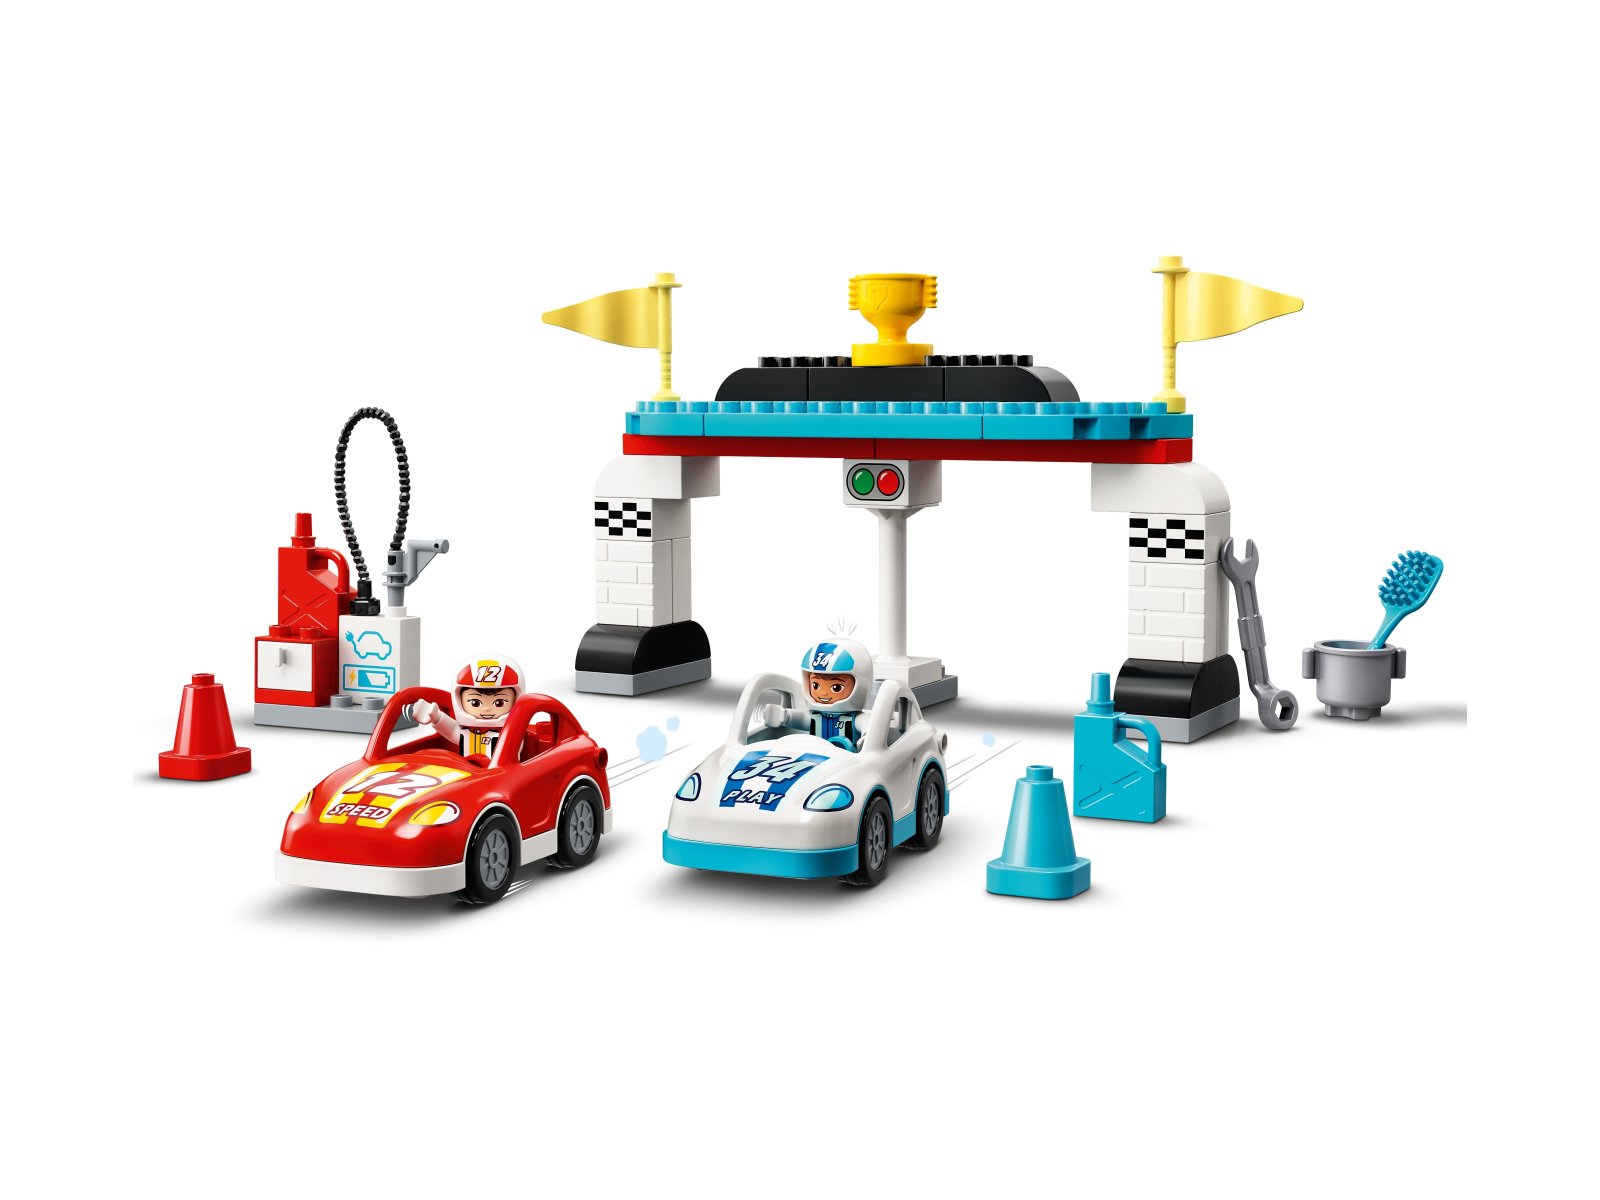 LEGO Duplo 10947 Samochody wyścigowe